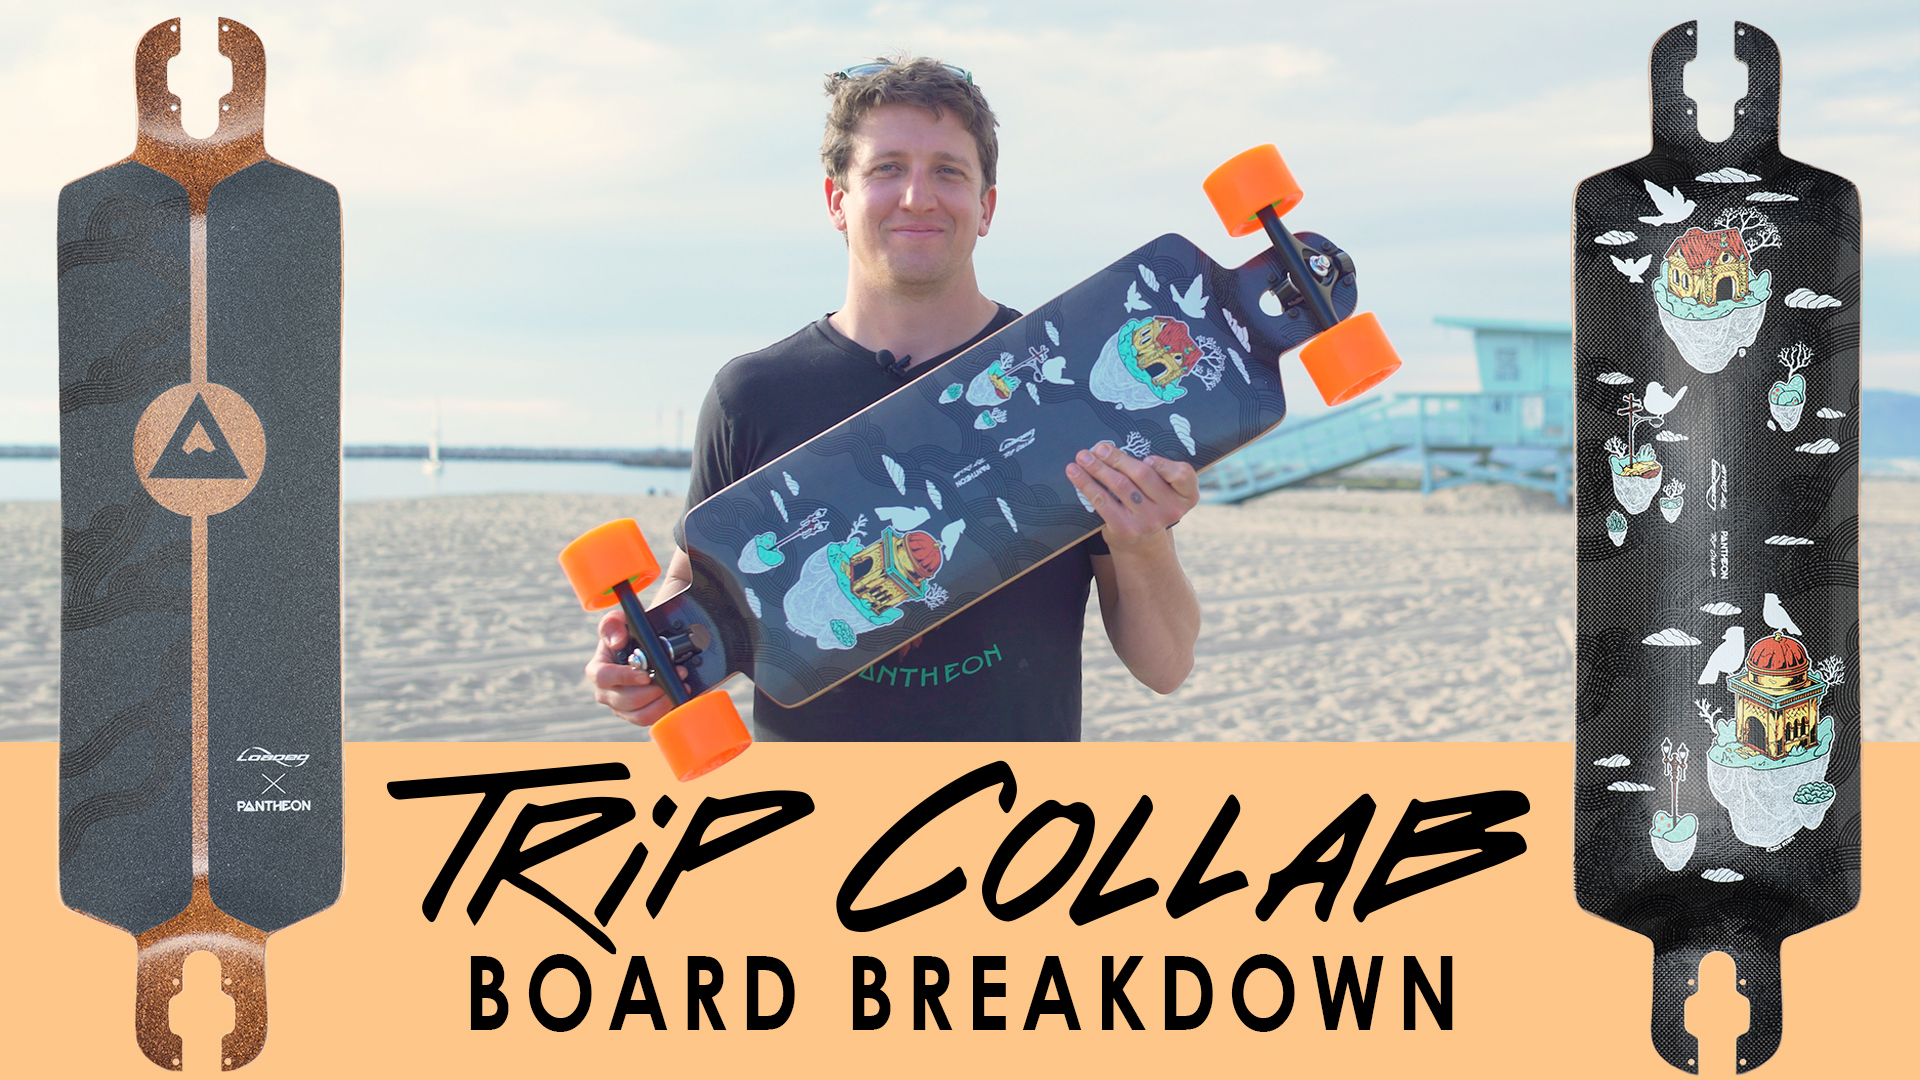 Loaded Trip Collab: Board Breakdown